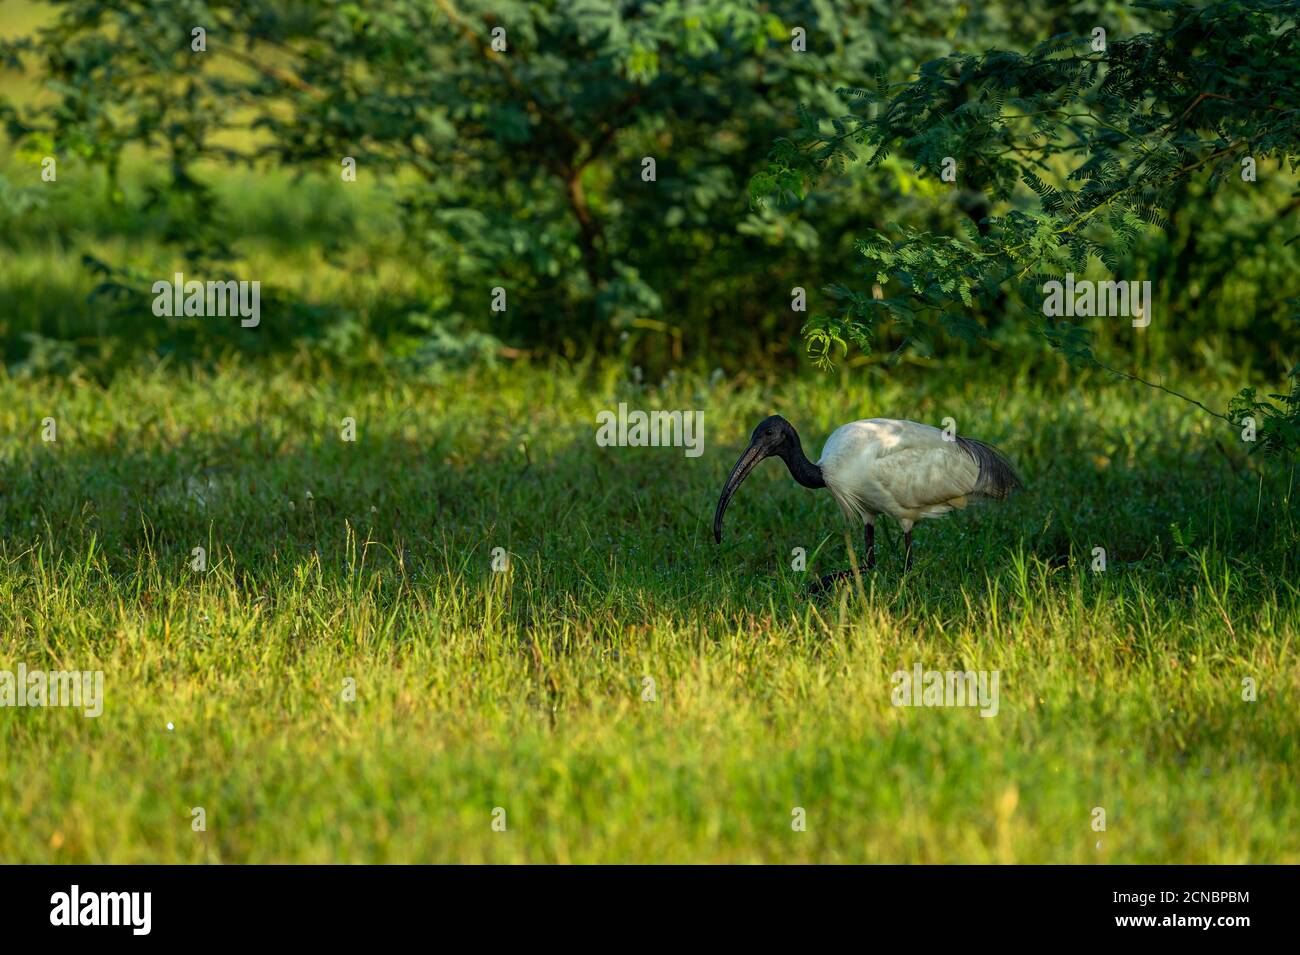 Schwarzer Kopf Ibis oder schwarzer Hals Ibis in Naturgrün Hintergrund in keoladeo ghana Nationalpark oder bharatpur Vogelschutzgebiet rajasthan indien - Thres Stockfoto